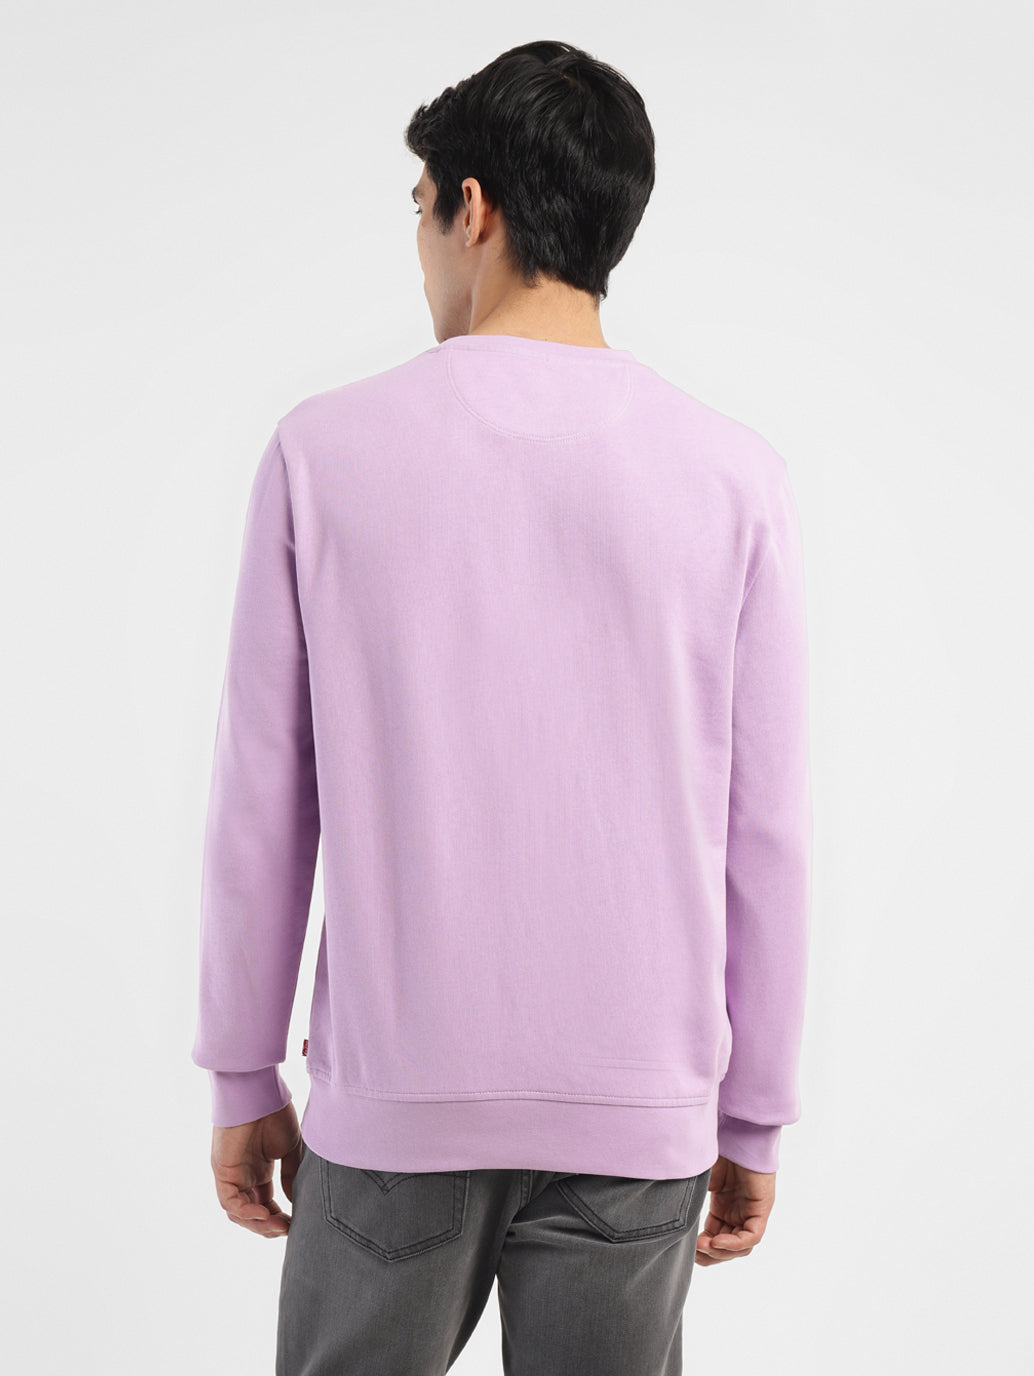 Men's Brand Logo Purple Crew Neck Sweatshirt